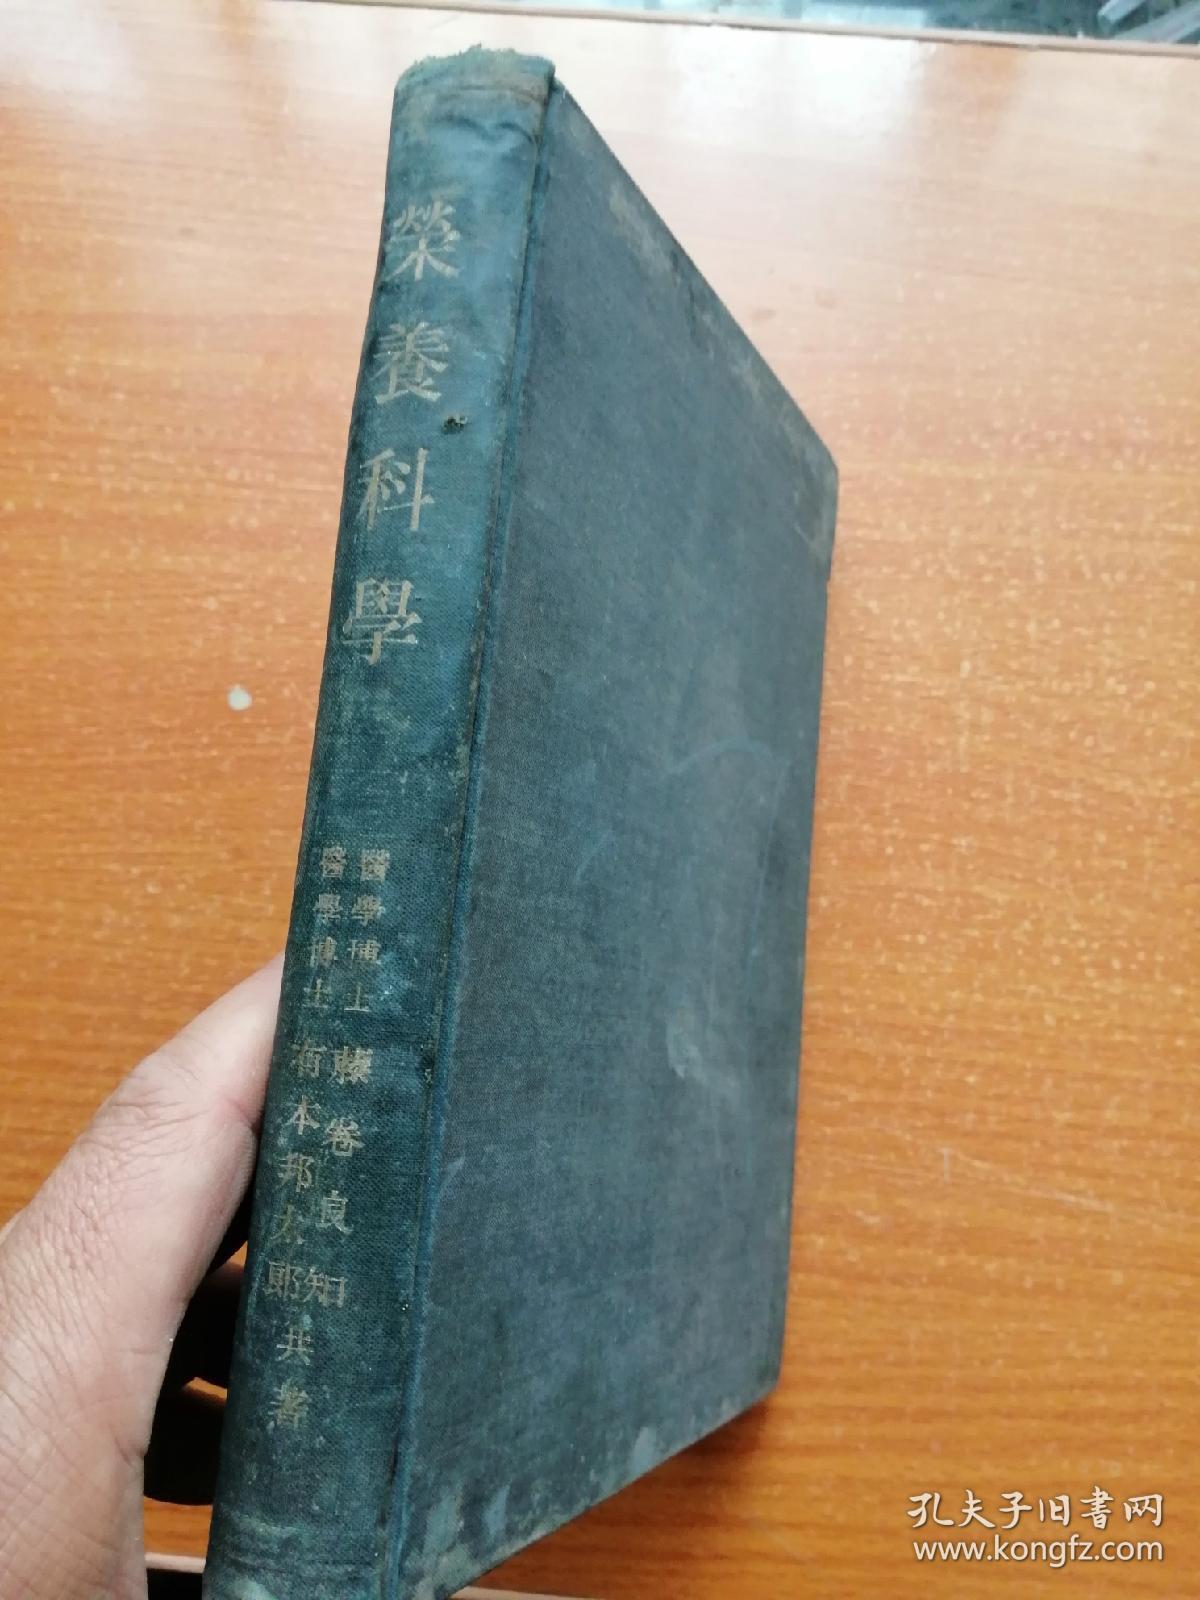 荣养科学 日文原版 精装  昭和十七年版 即1942年